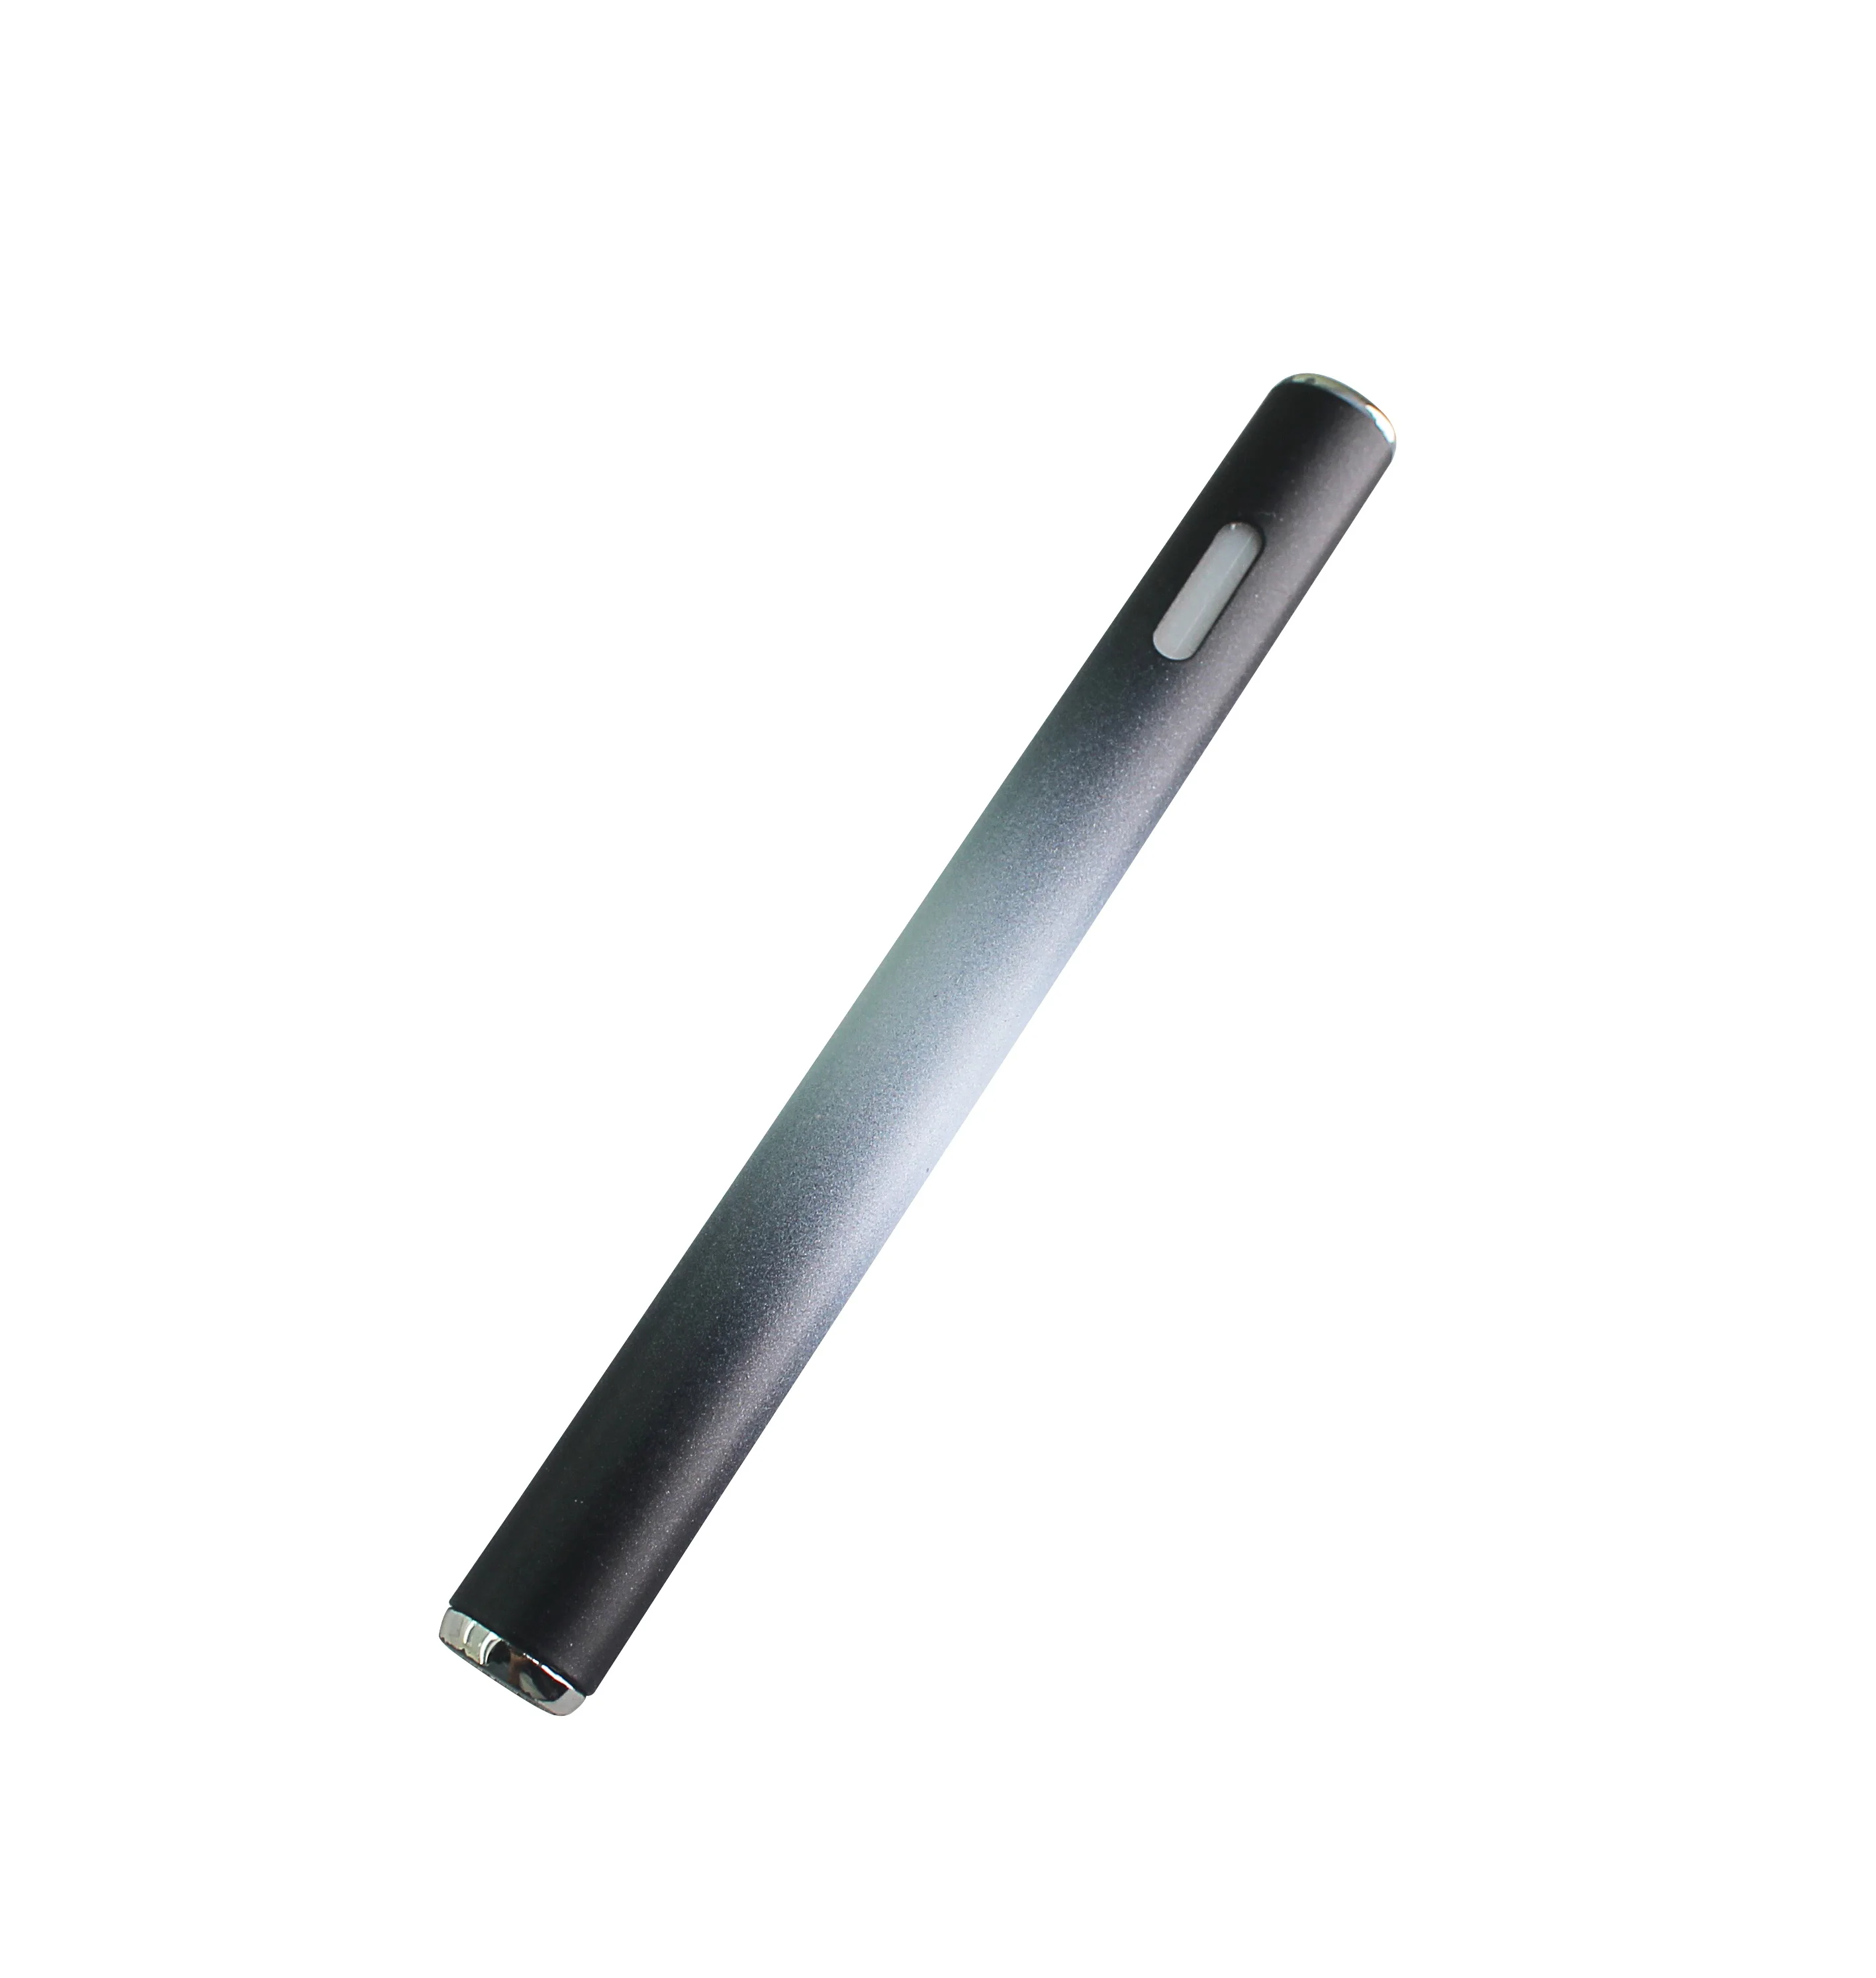 E cigarette disposable vaporizer pen cartridge 180mah Slim 510 battery CBD vape pen